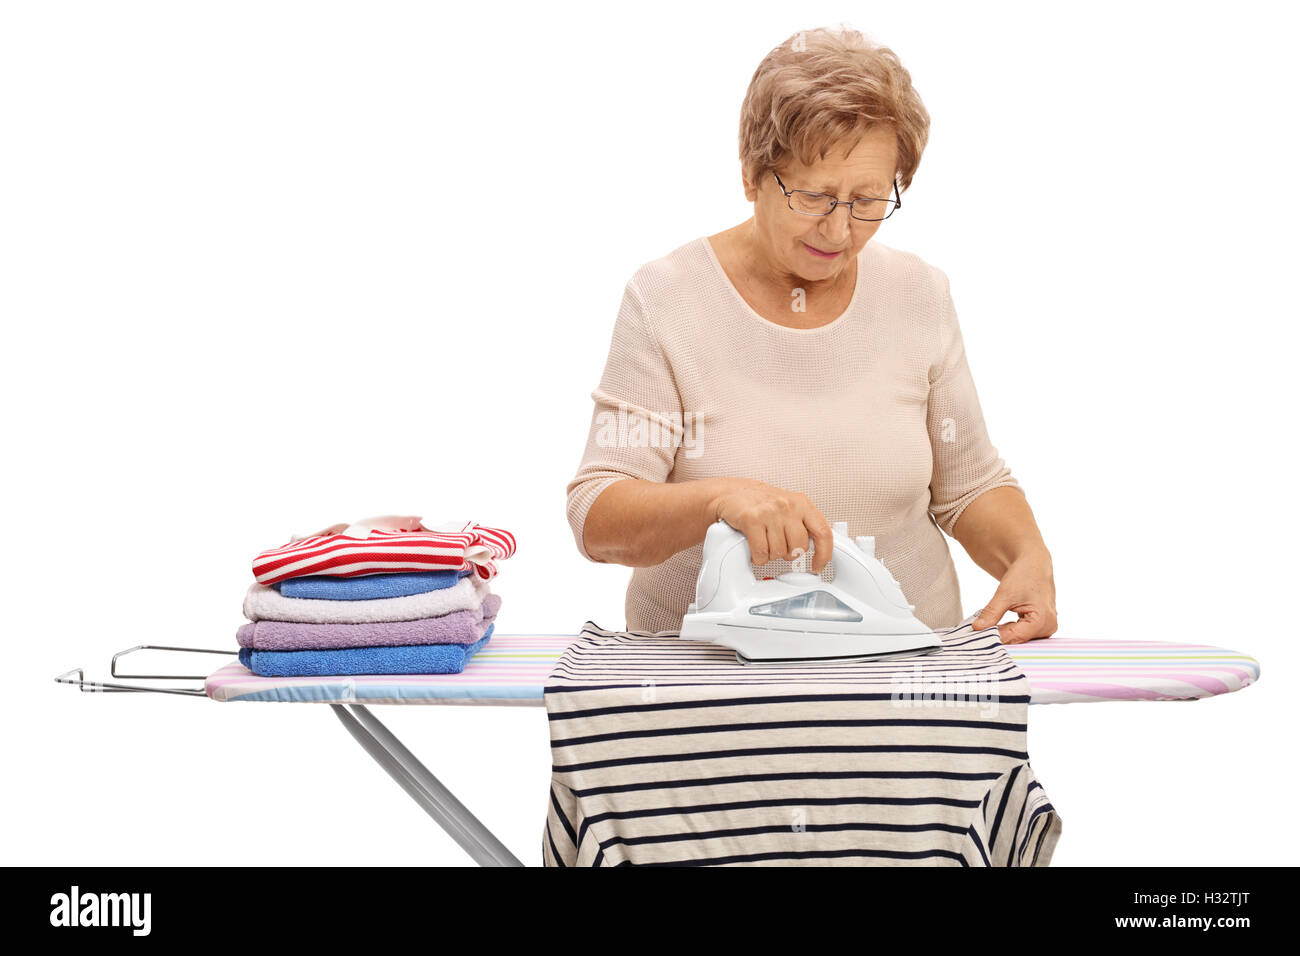 Reife Frau Bügeln von Kleidung auf dem Bügelbrett isoliert auf weißem Hintergrund Stockfoto